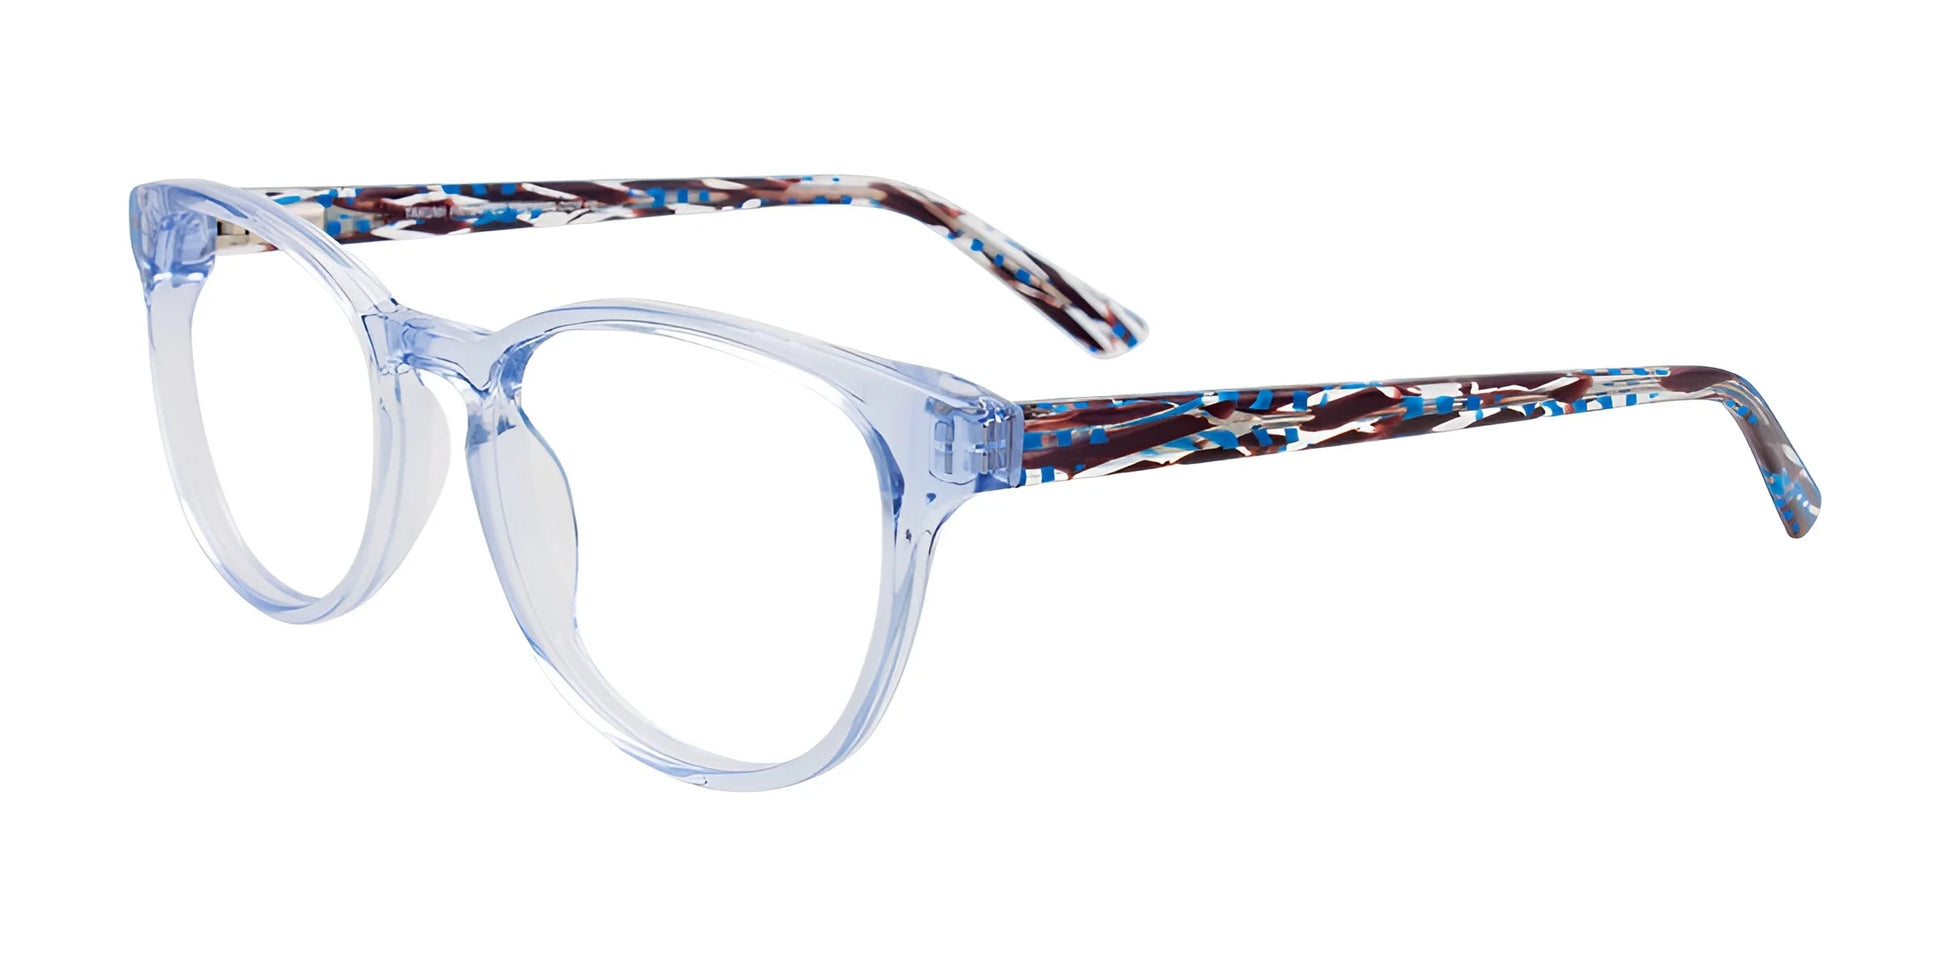 Takumi TK1091 Eyeglasses Light Blue Crystal